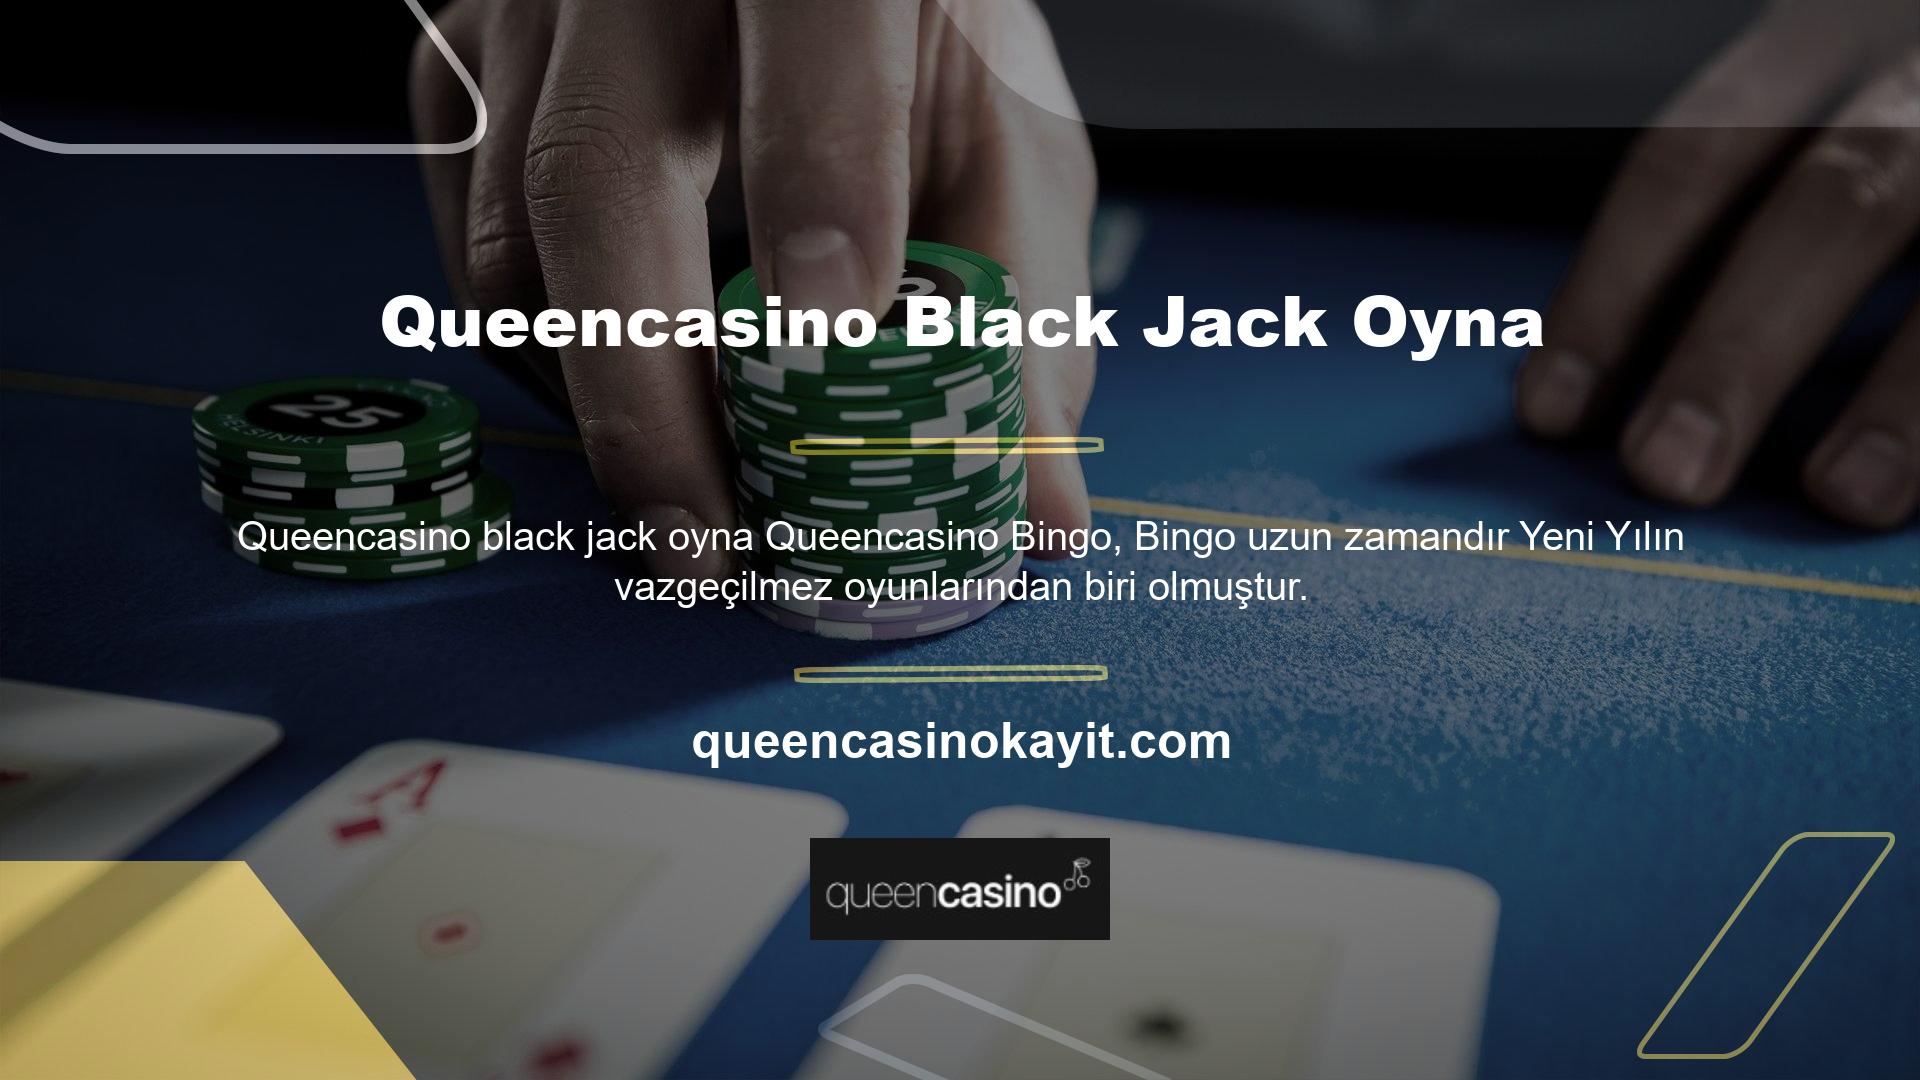 İnternetin gelişmesiyle birlikte oyuncular casinolarda çevrimiçi oynamaya başladı